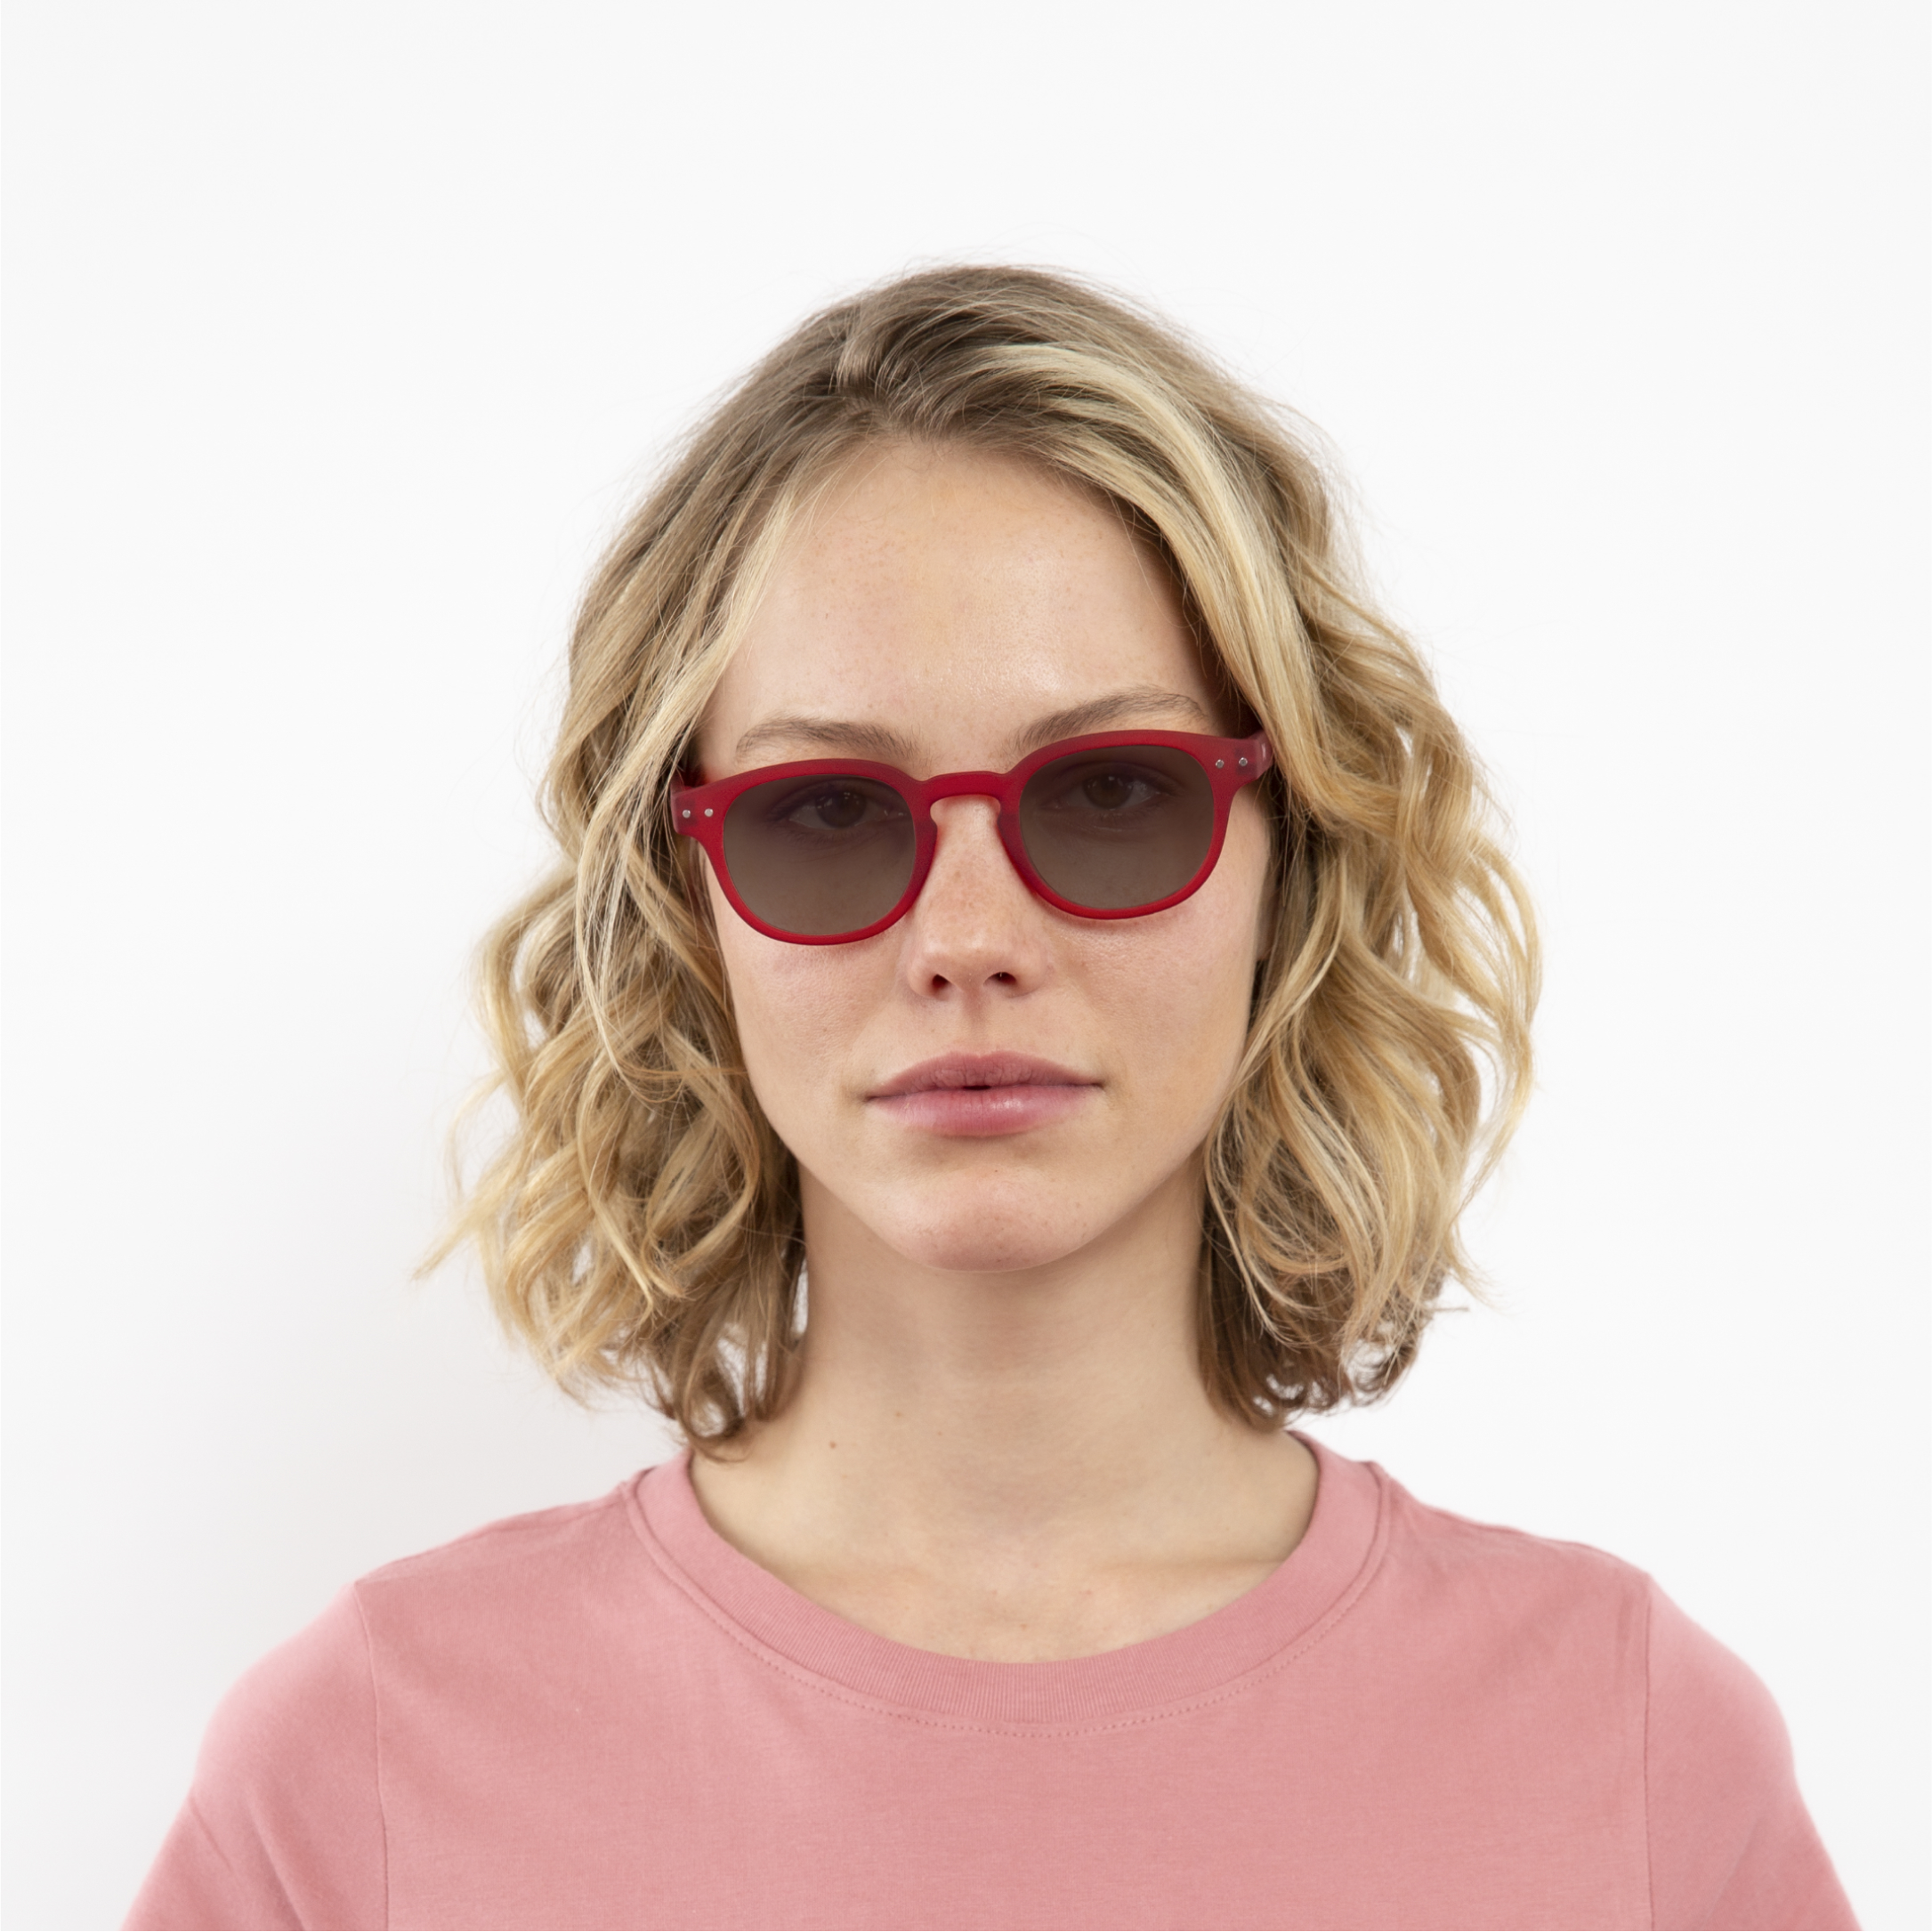 ochelari heliomati si tranzitie lentile maro femei anton rosie profil rama